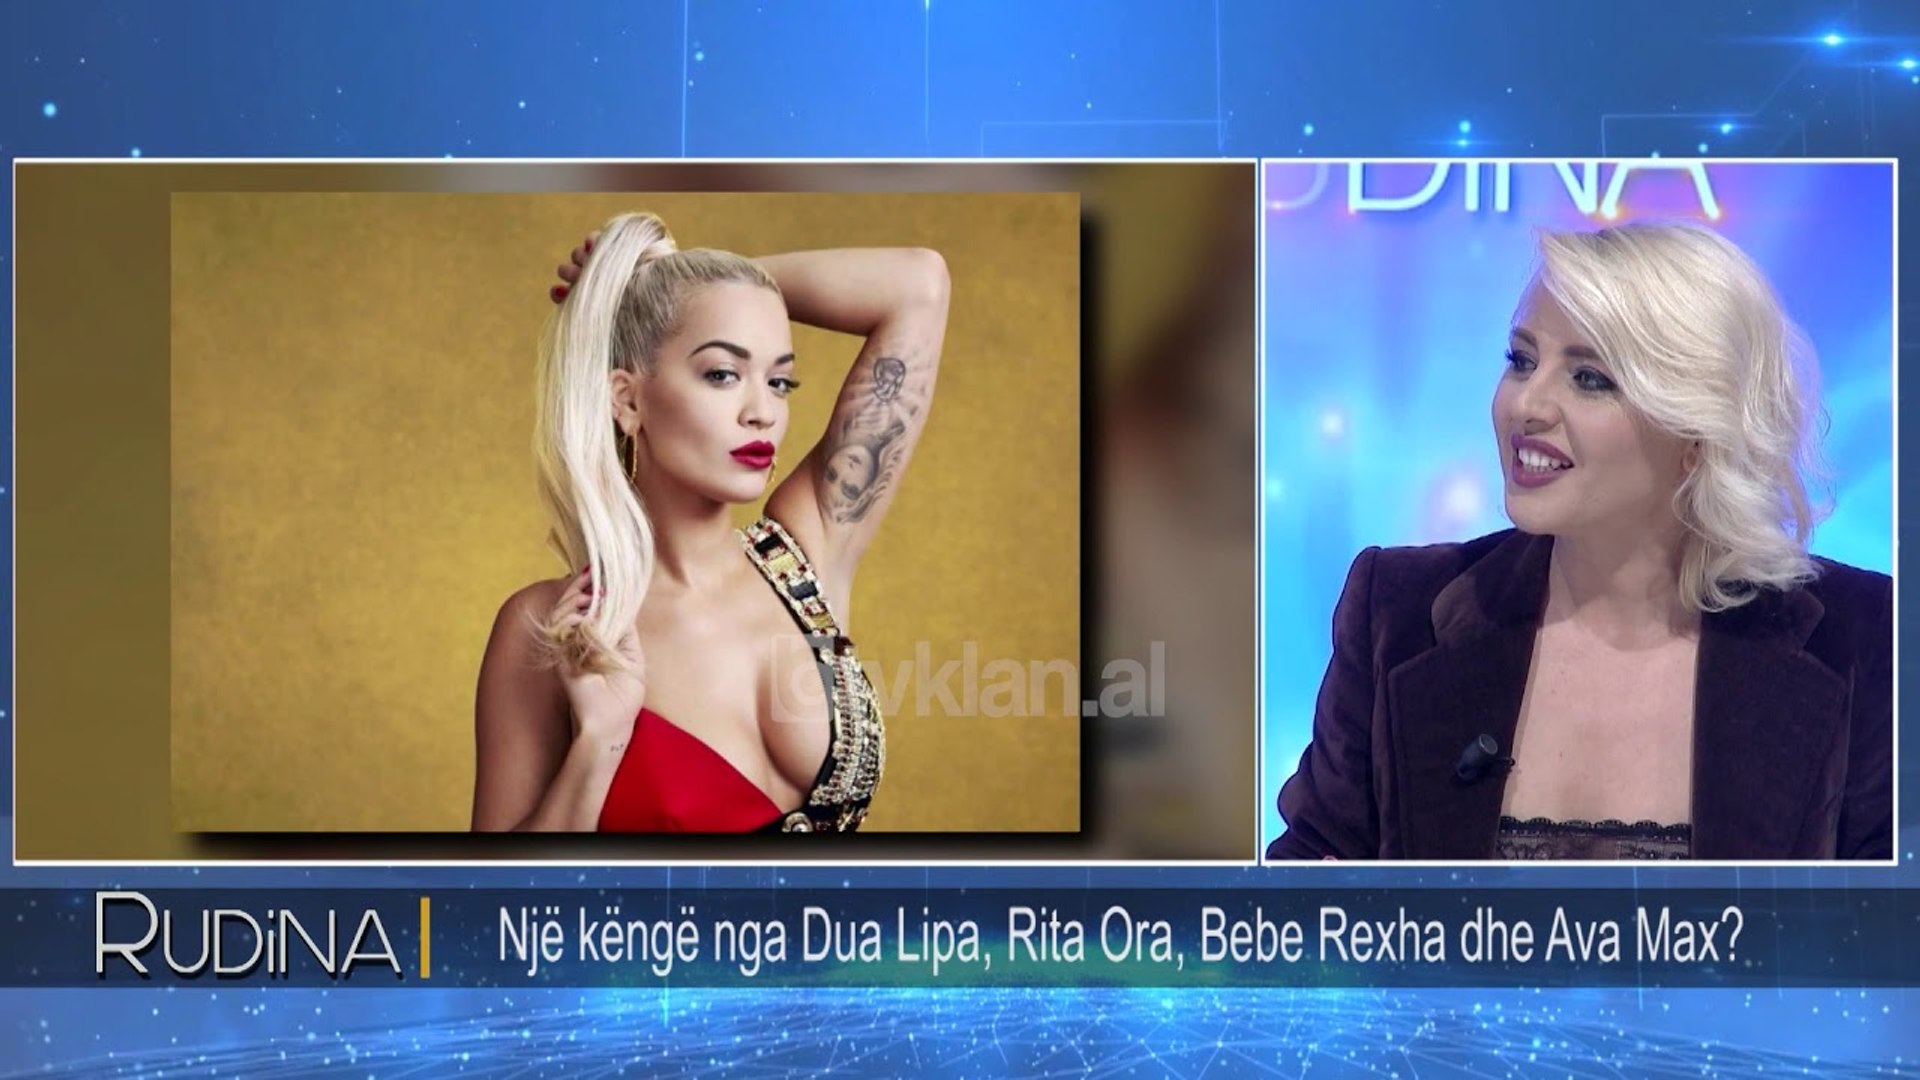 ⁣Rudina - Nje kenge nga Dua Lipa, Rita Ora, Bebe Rexha dhe Ava Max? (05 shkurt 2019)